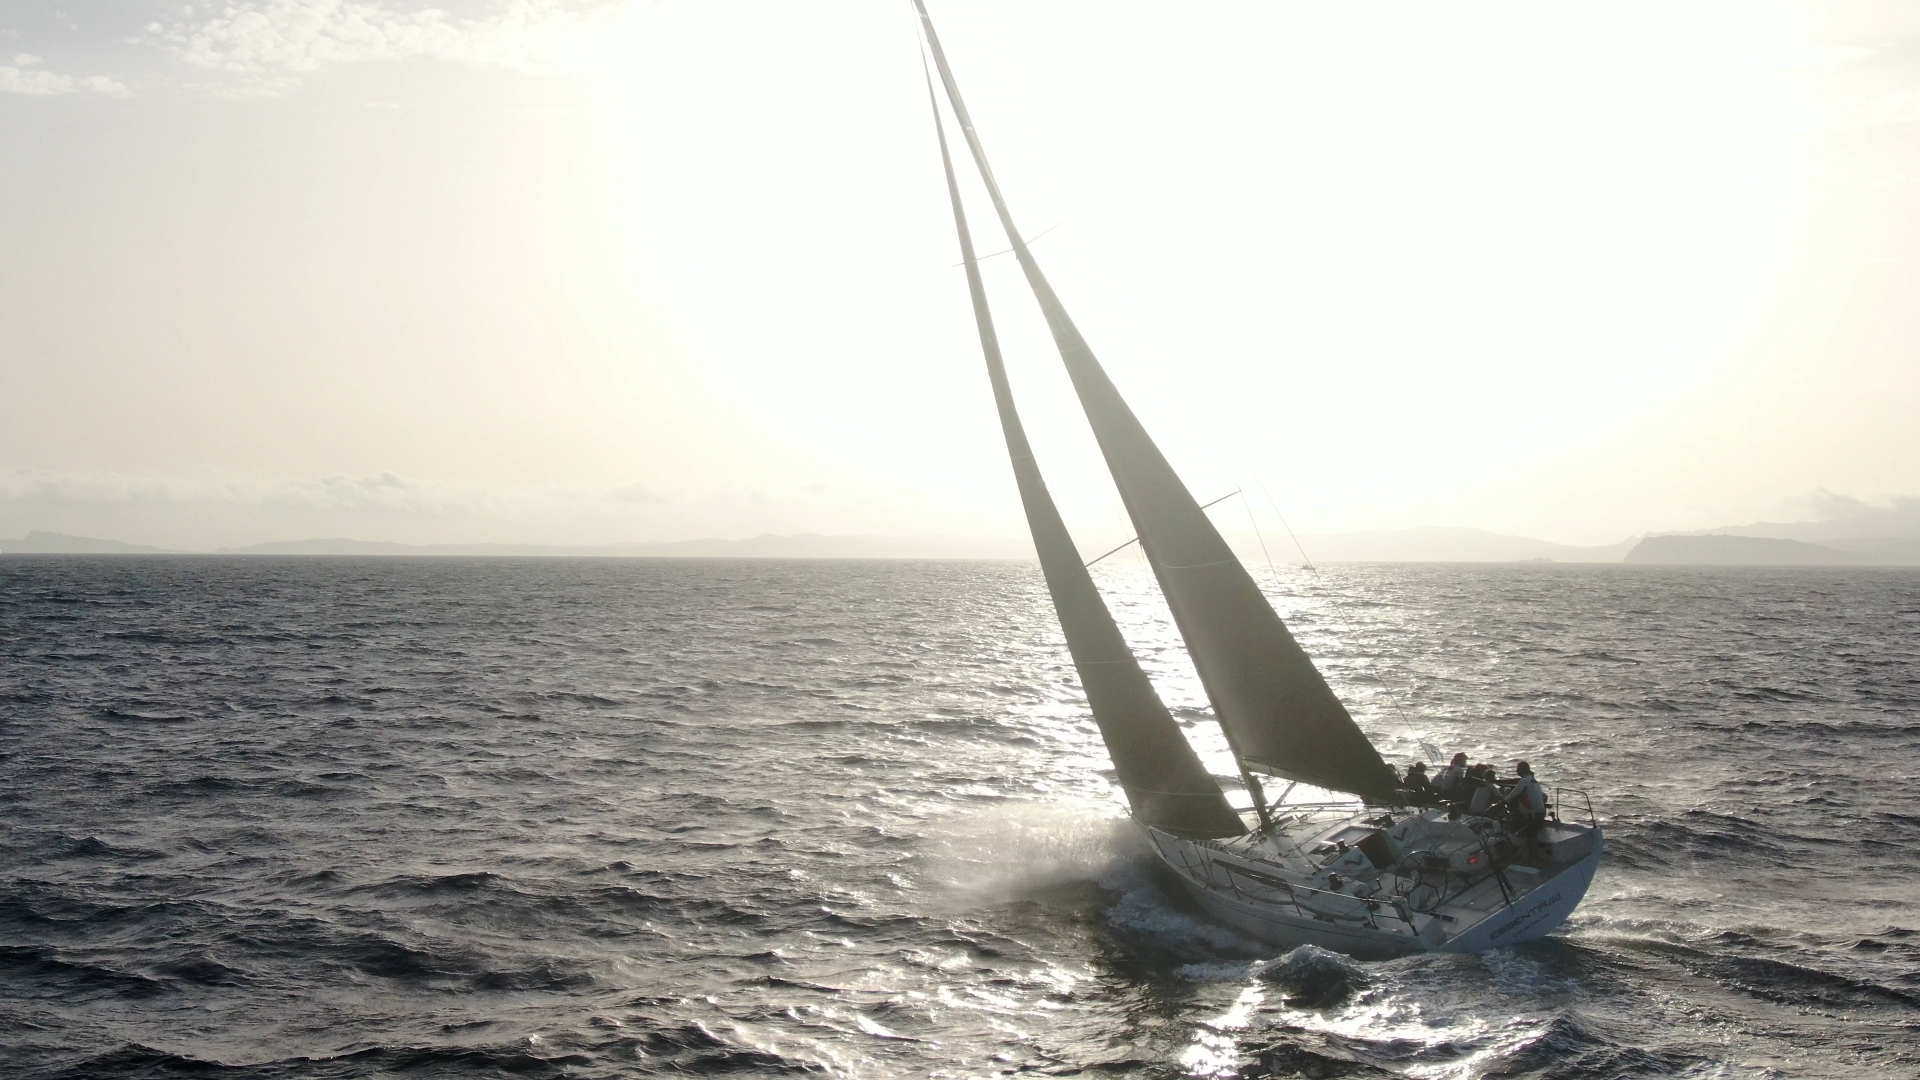 Campionato Mondiale ORC di vela d’altura, conclusa la prova offshore - News - Yacht Club Costa Smeralda